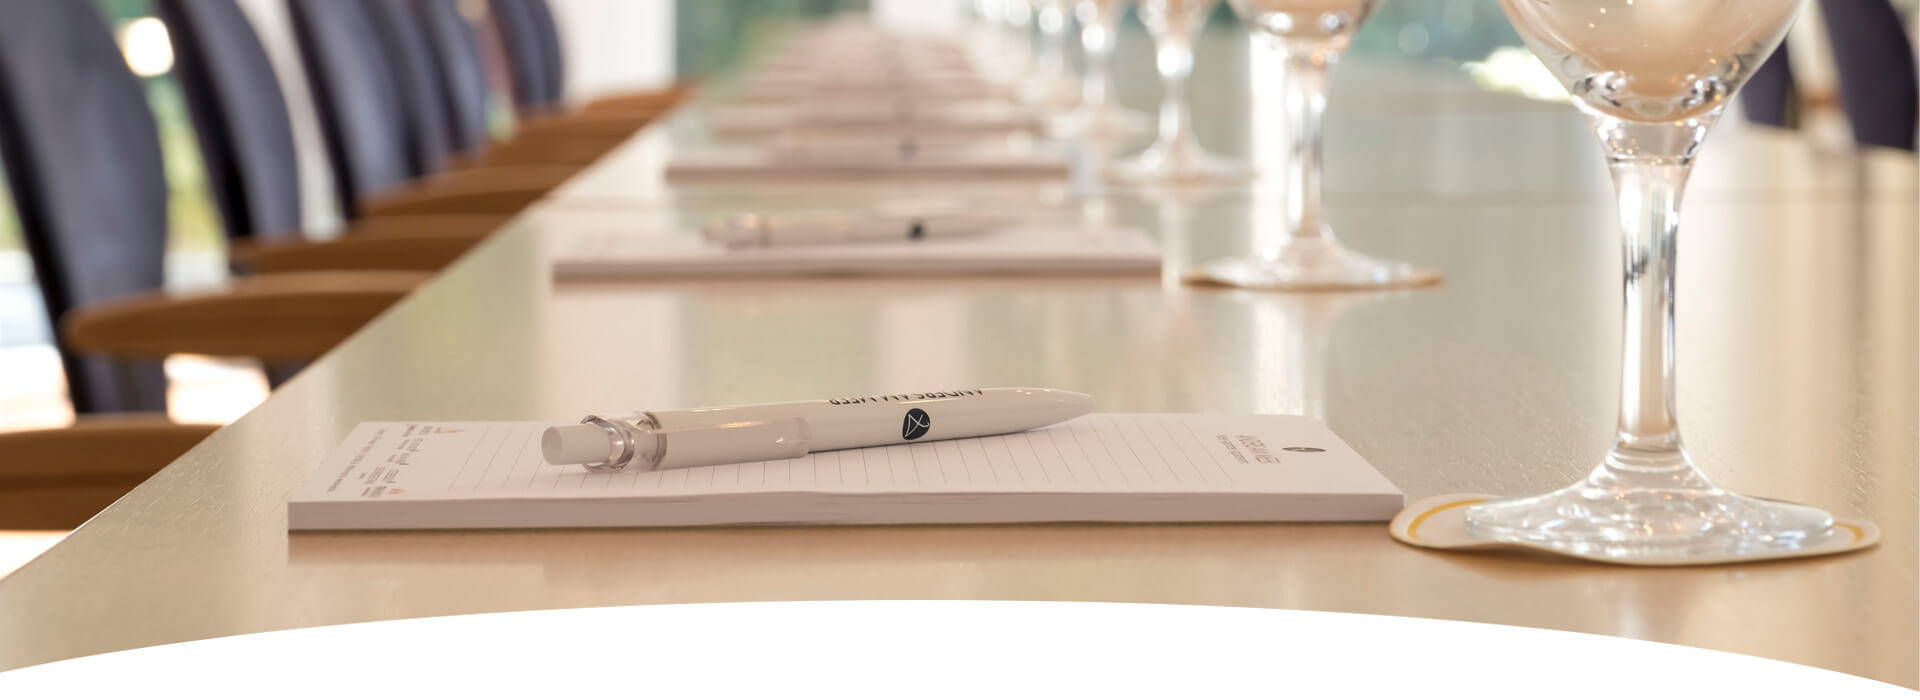 Fokus auf einen Schreibblock mit Anders am Meer Kugelschreiber sie liegen auf einem Tisch in den Tagungsräumen